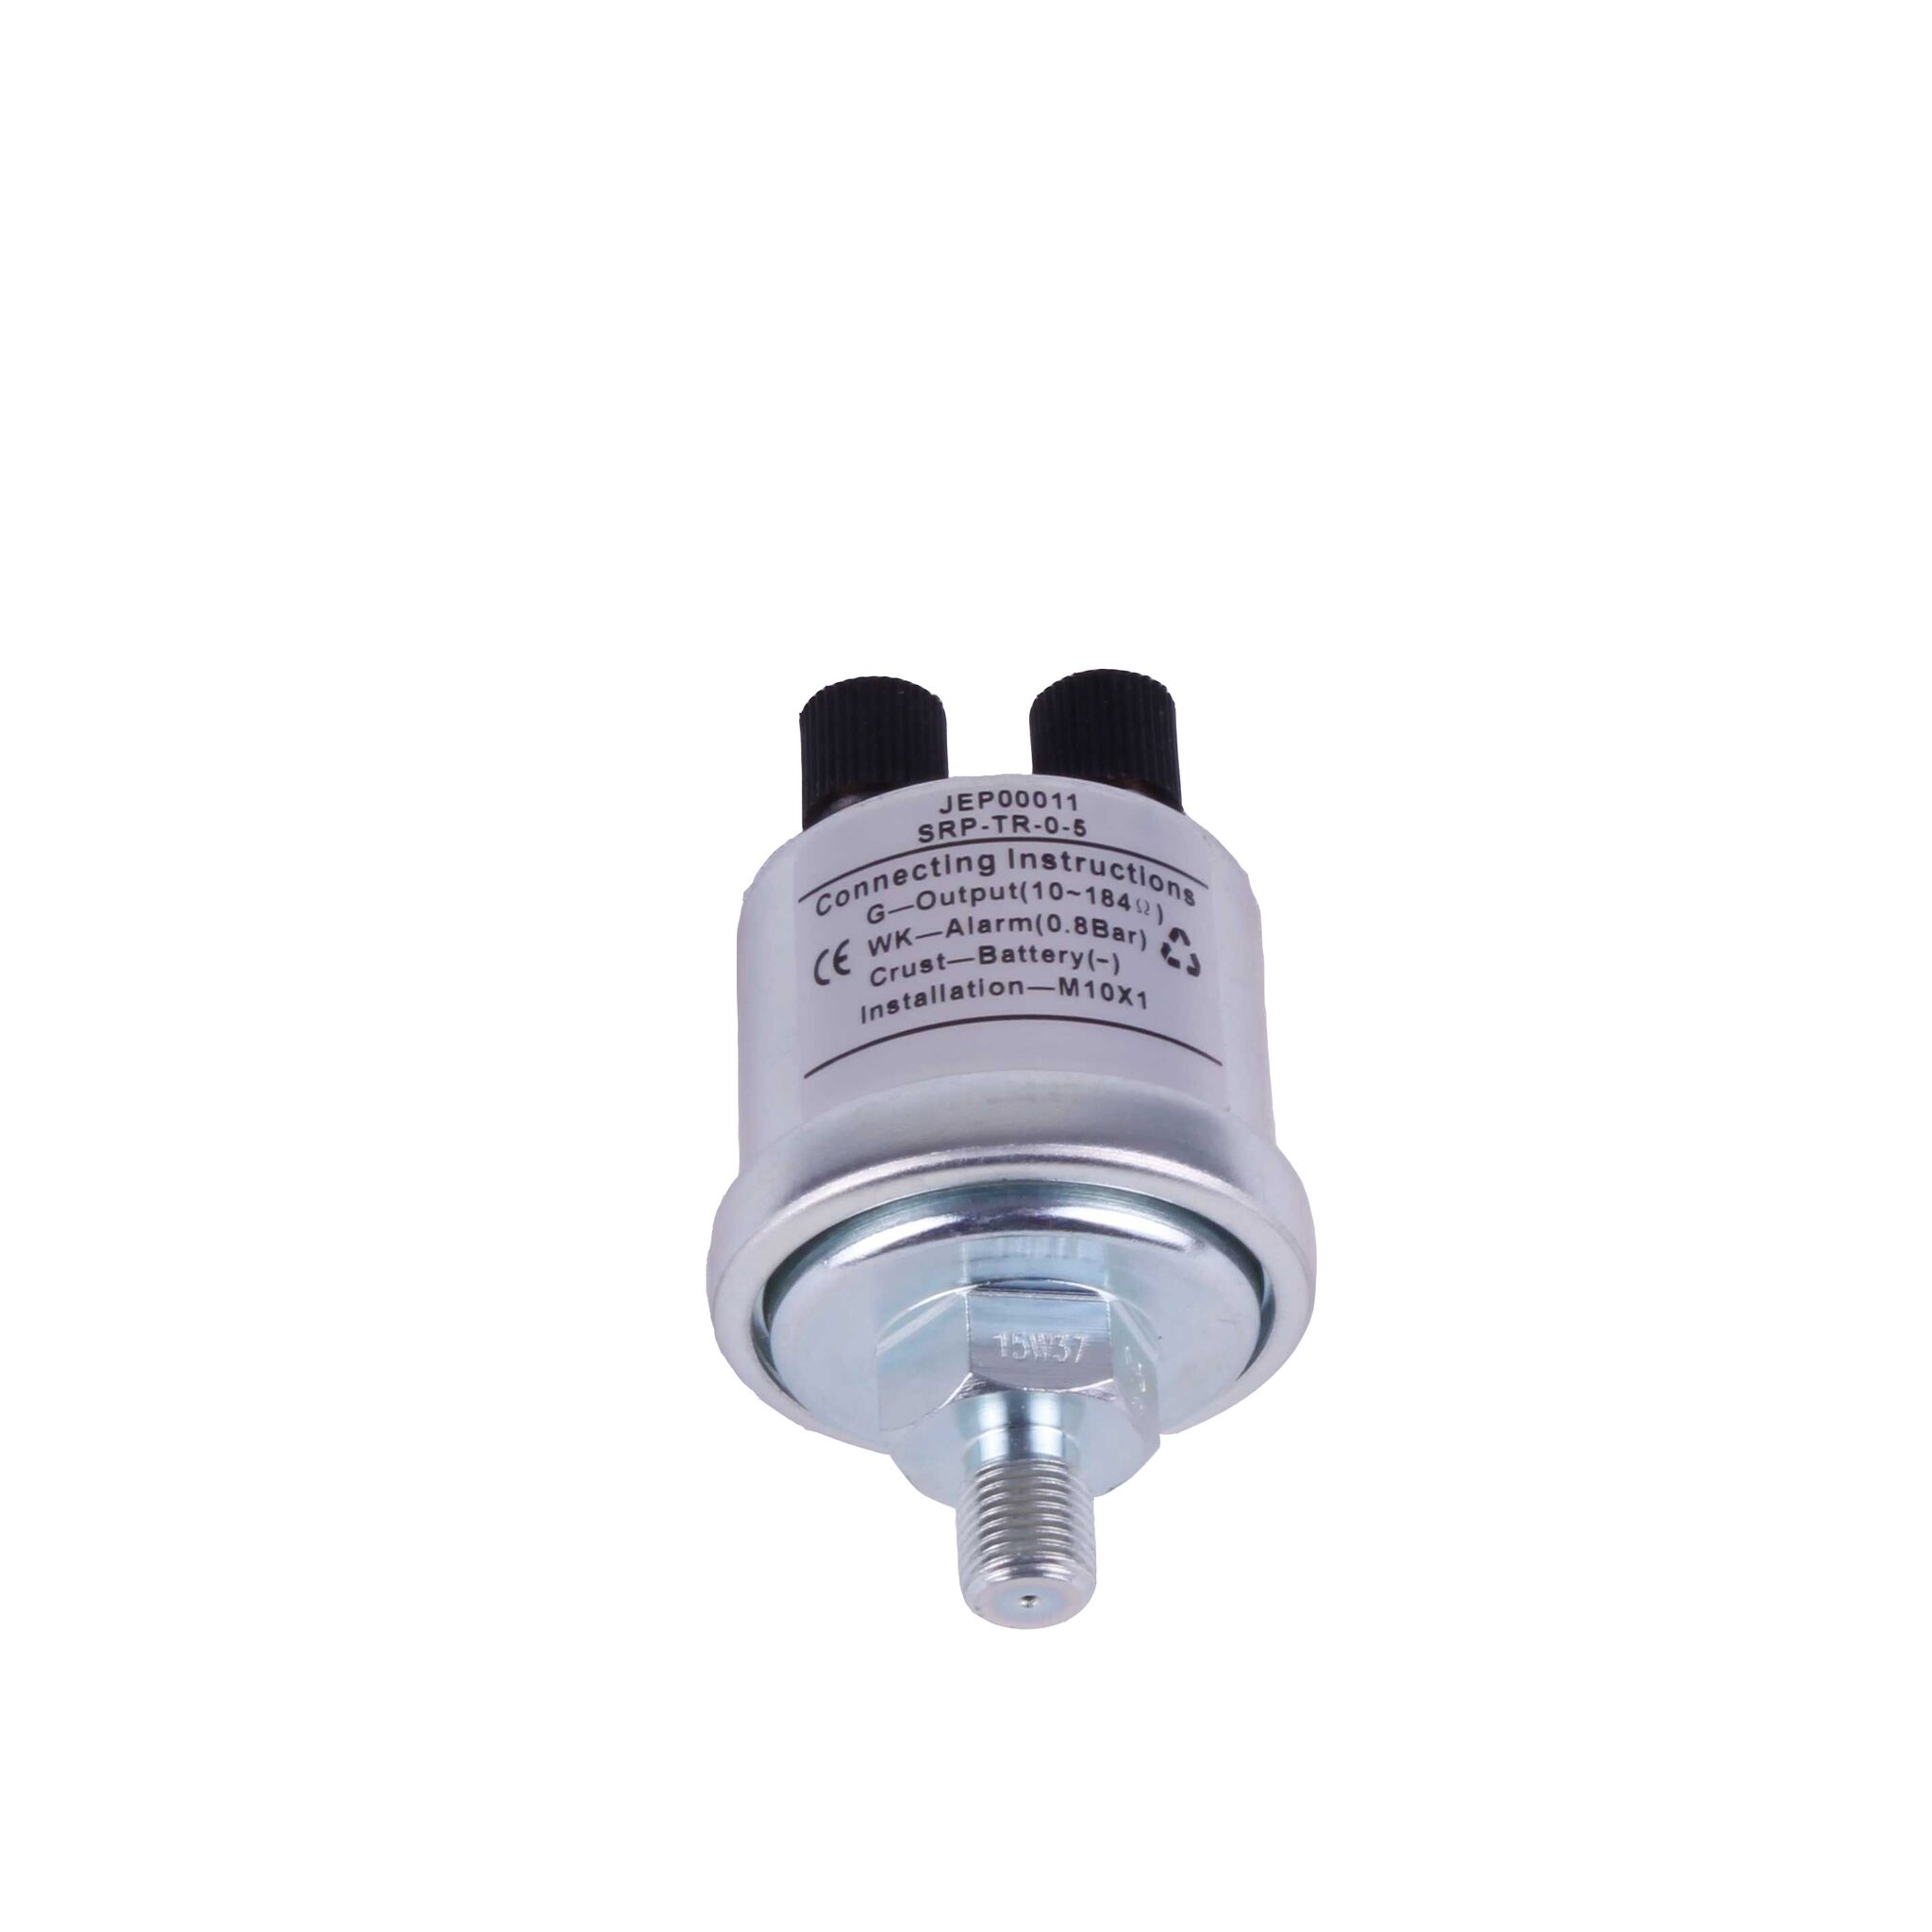 Oil pressure sensor M10x1, 0-5 bar